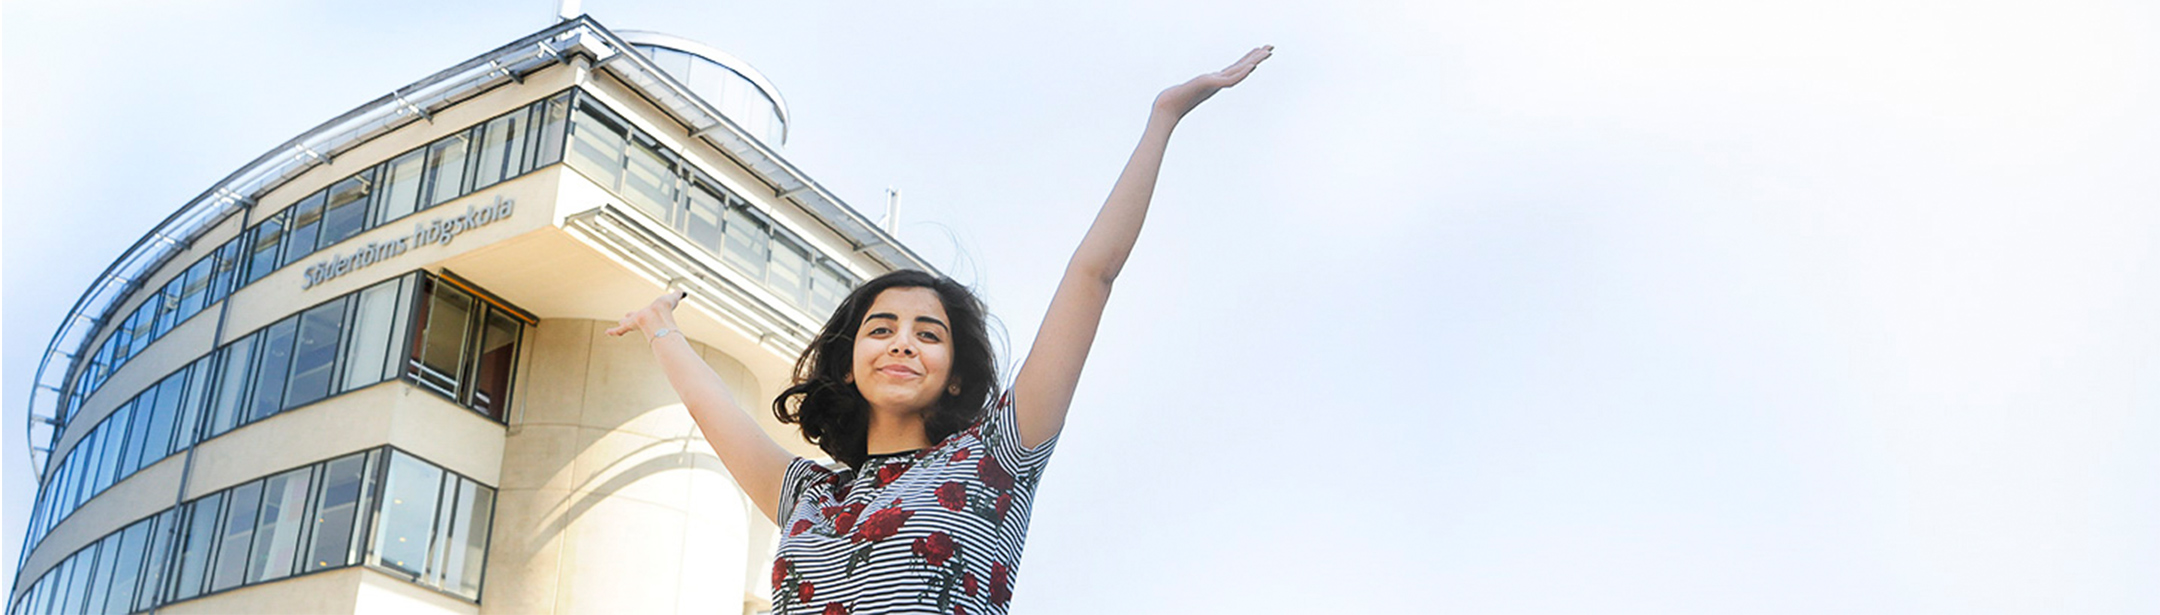 Kvinnlig student som sträcker armarna mot skyn.